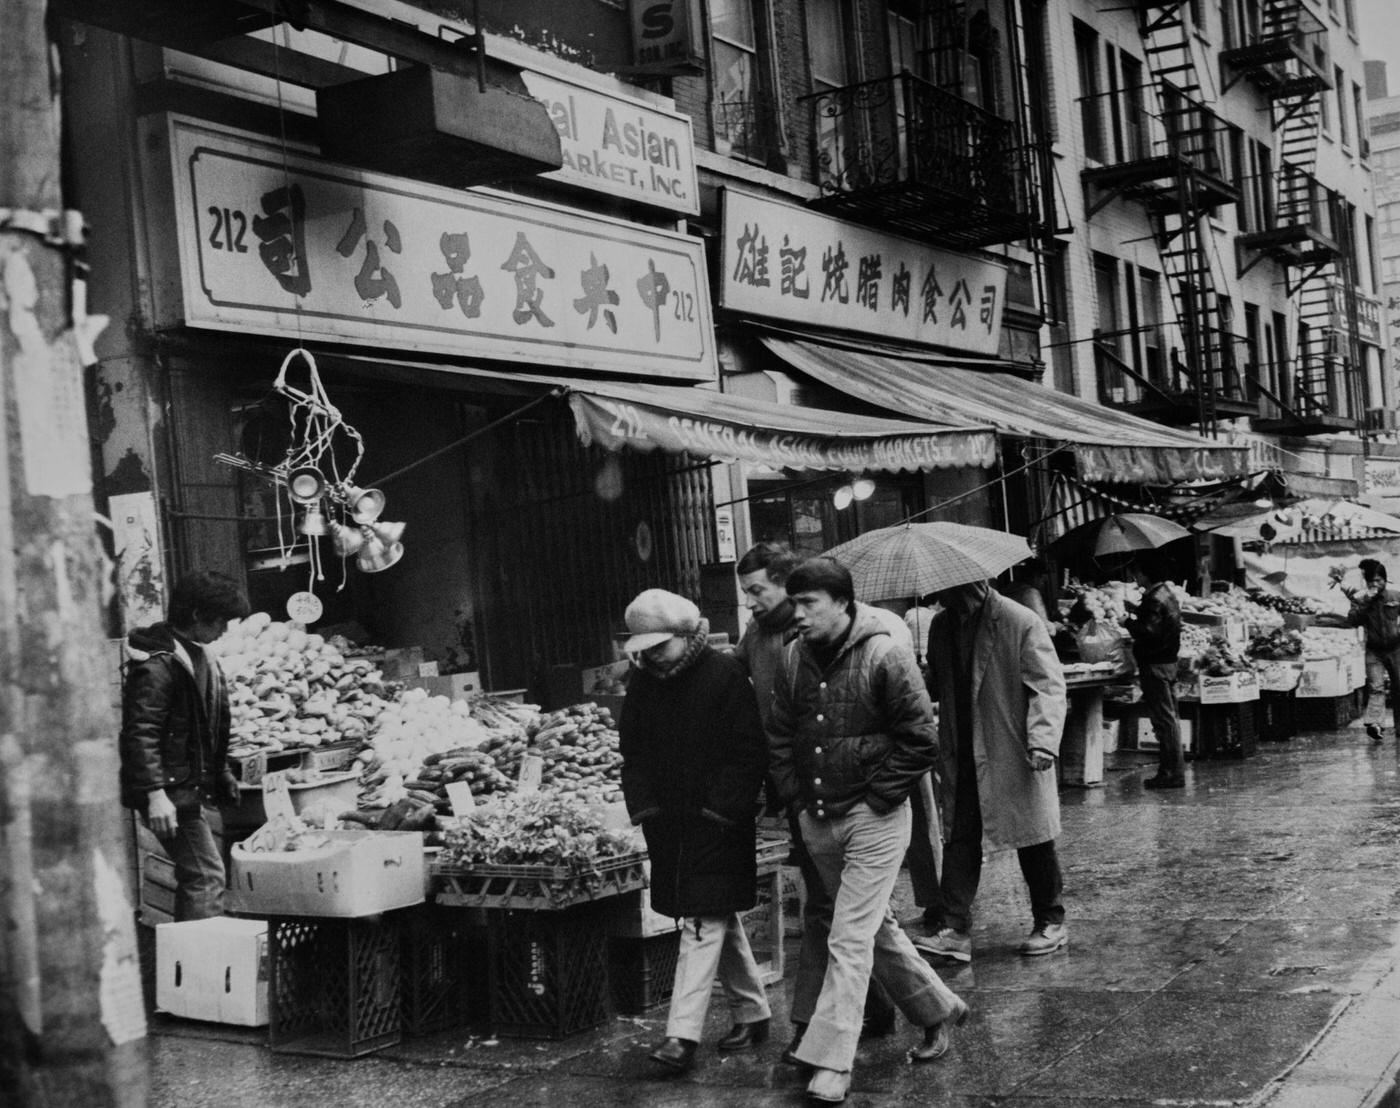 Pedestrians On Canal Street In Chinatown, Lower Manhattan, 1982